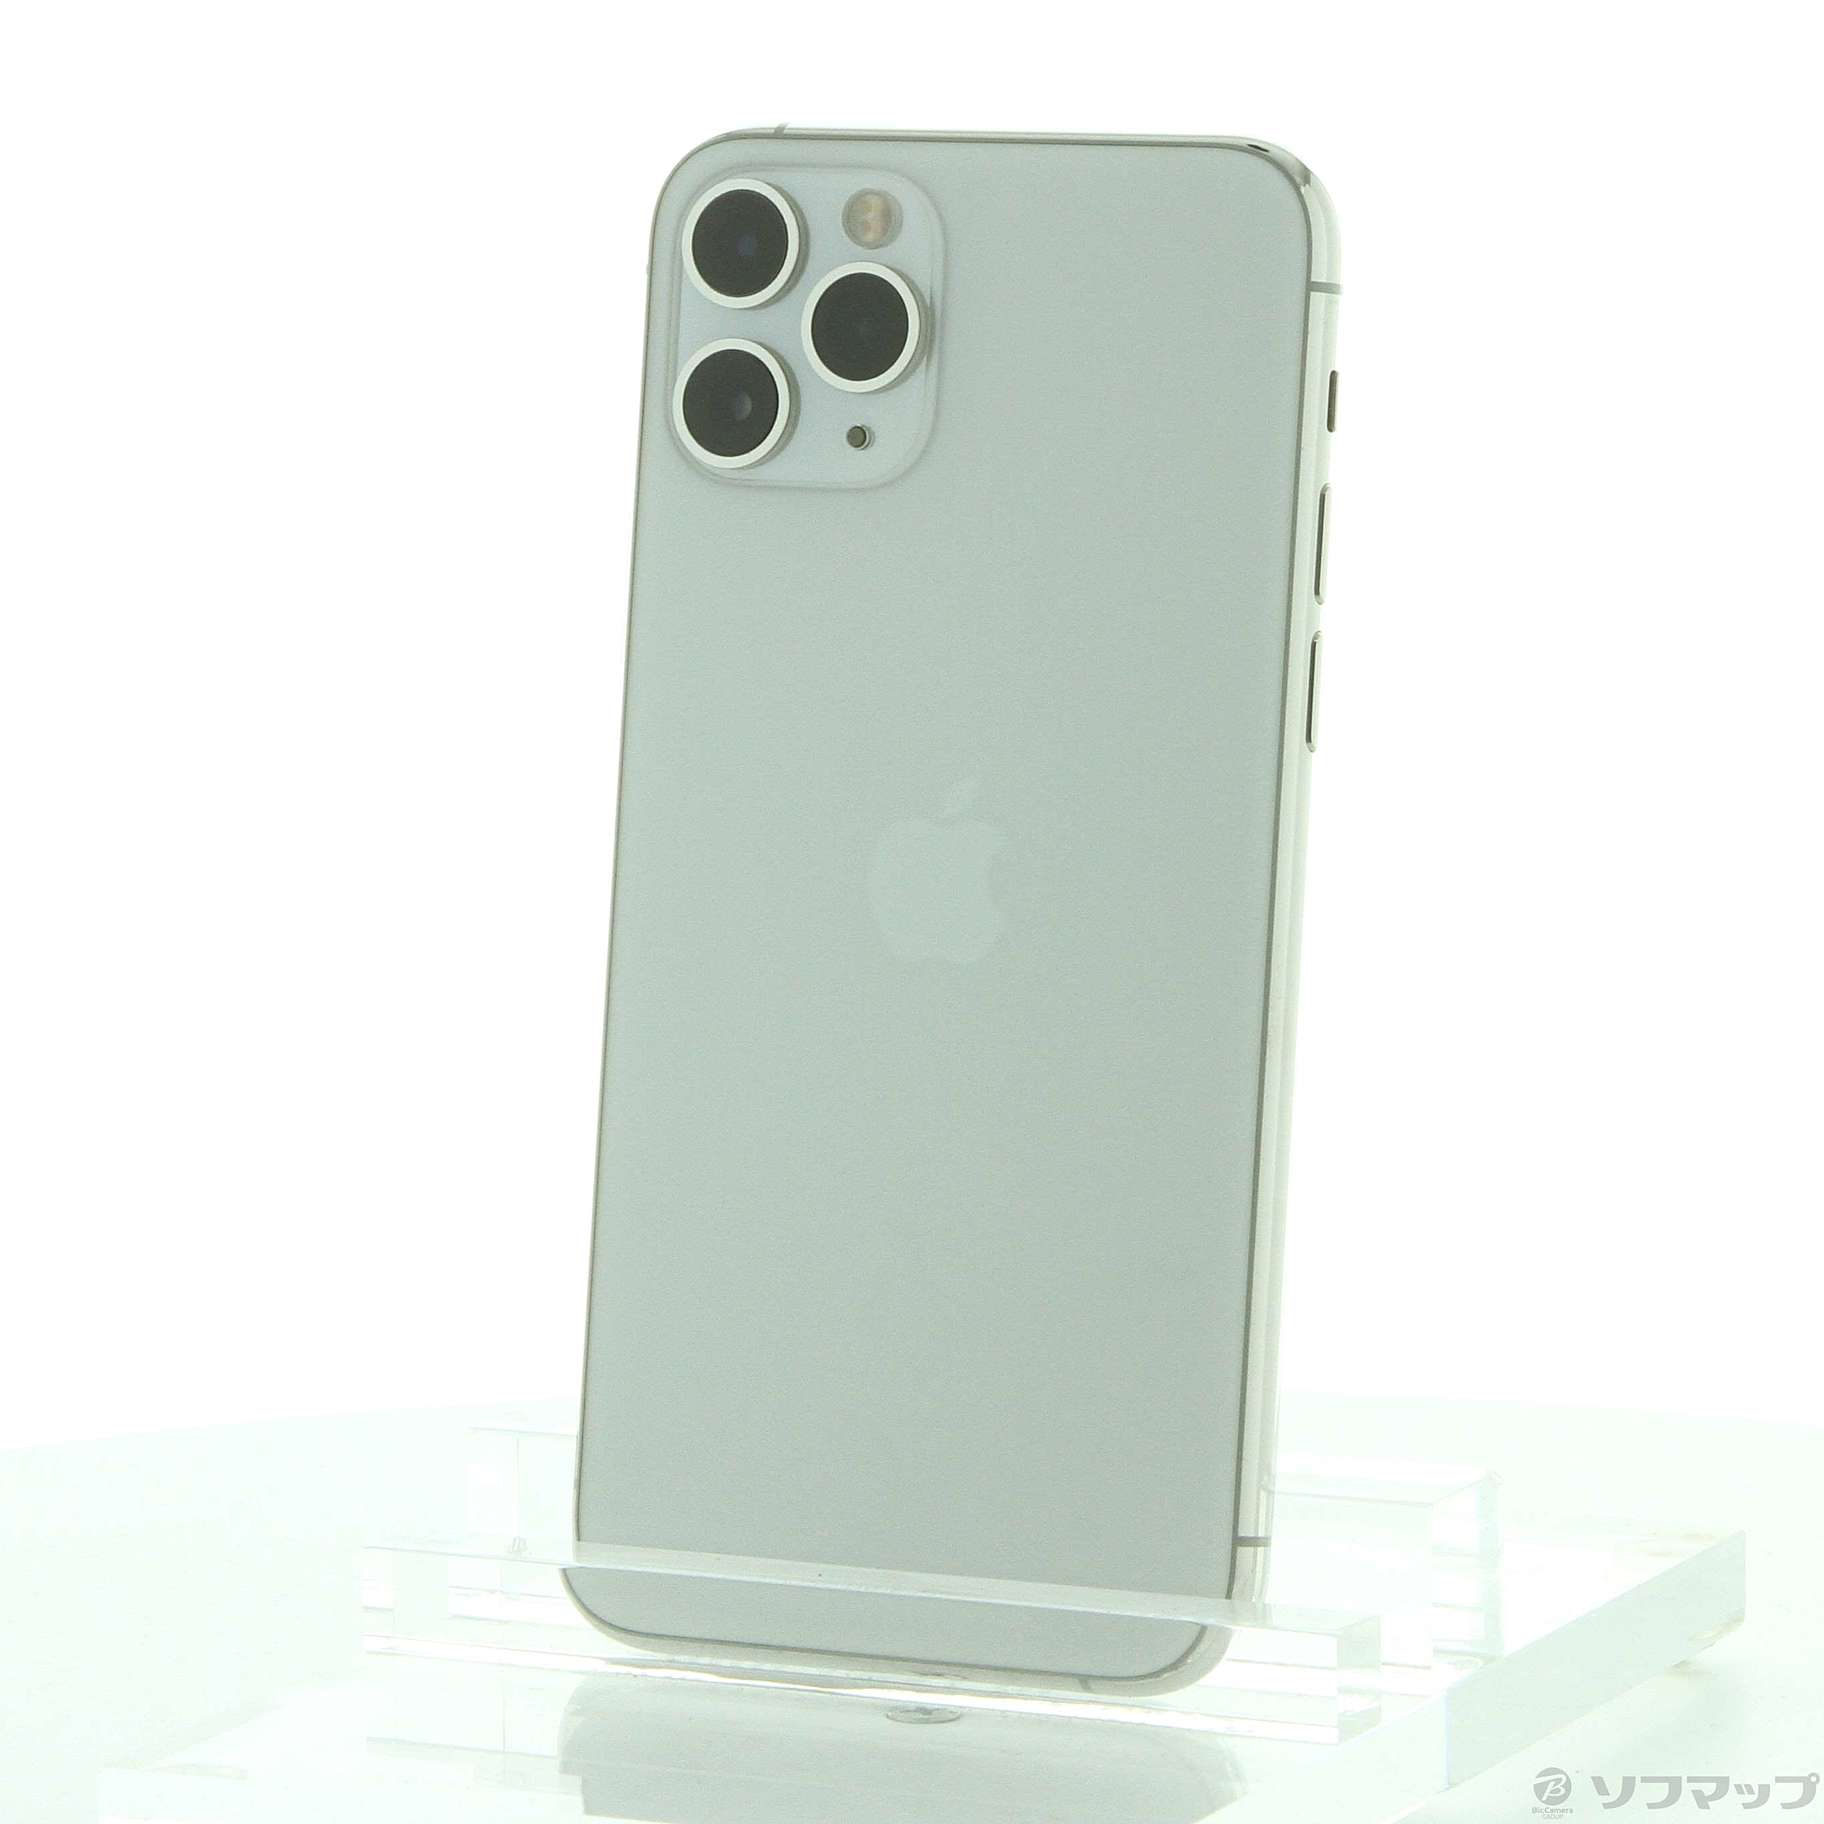 (中古)Apple iPhone11 Pro 256GB シルバー MWC82J/A SIMフリー(348-ud)